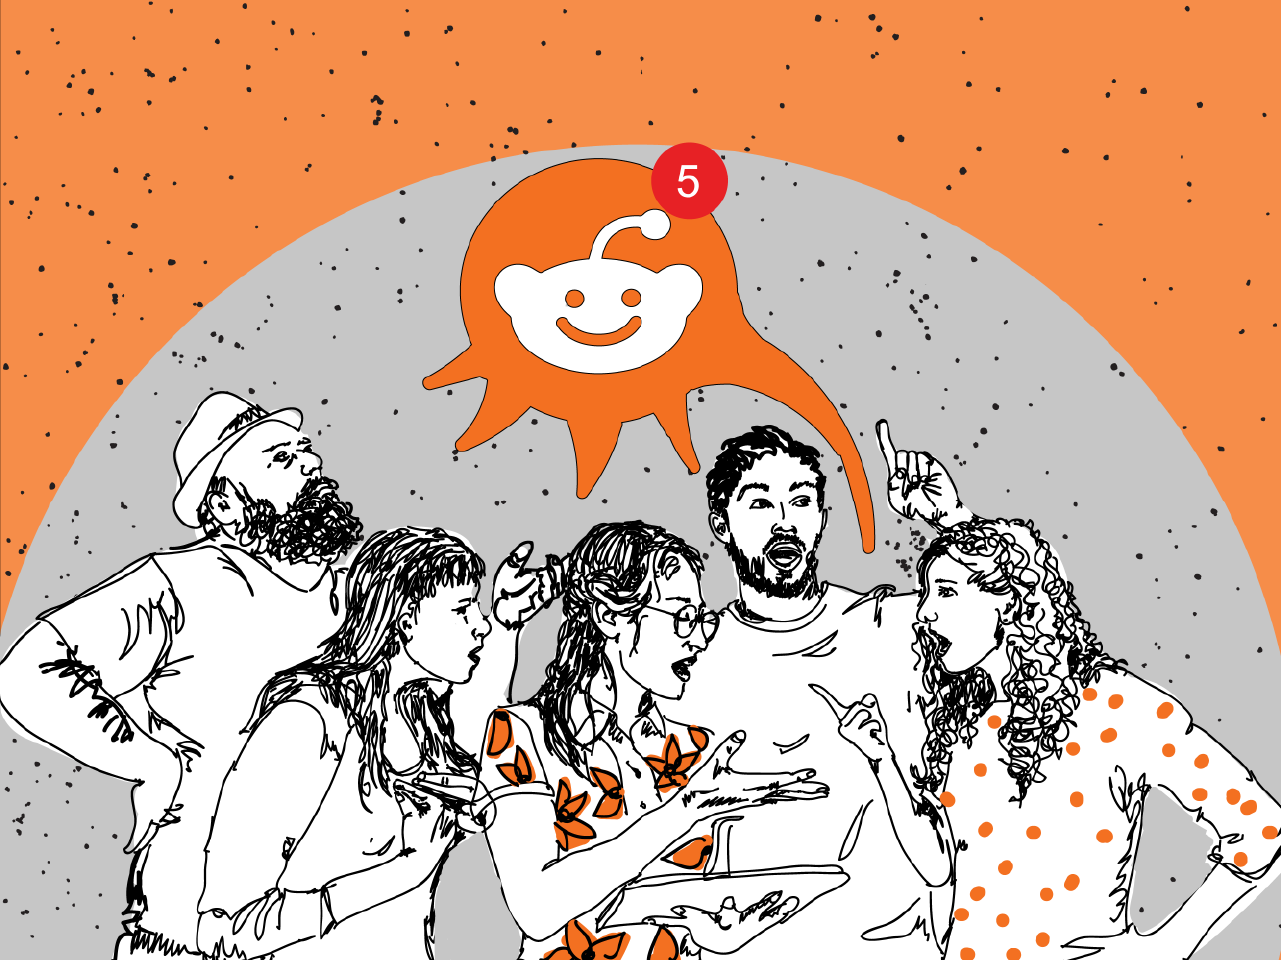 Maior comunidade brasileira no Reddit reforça moderação